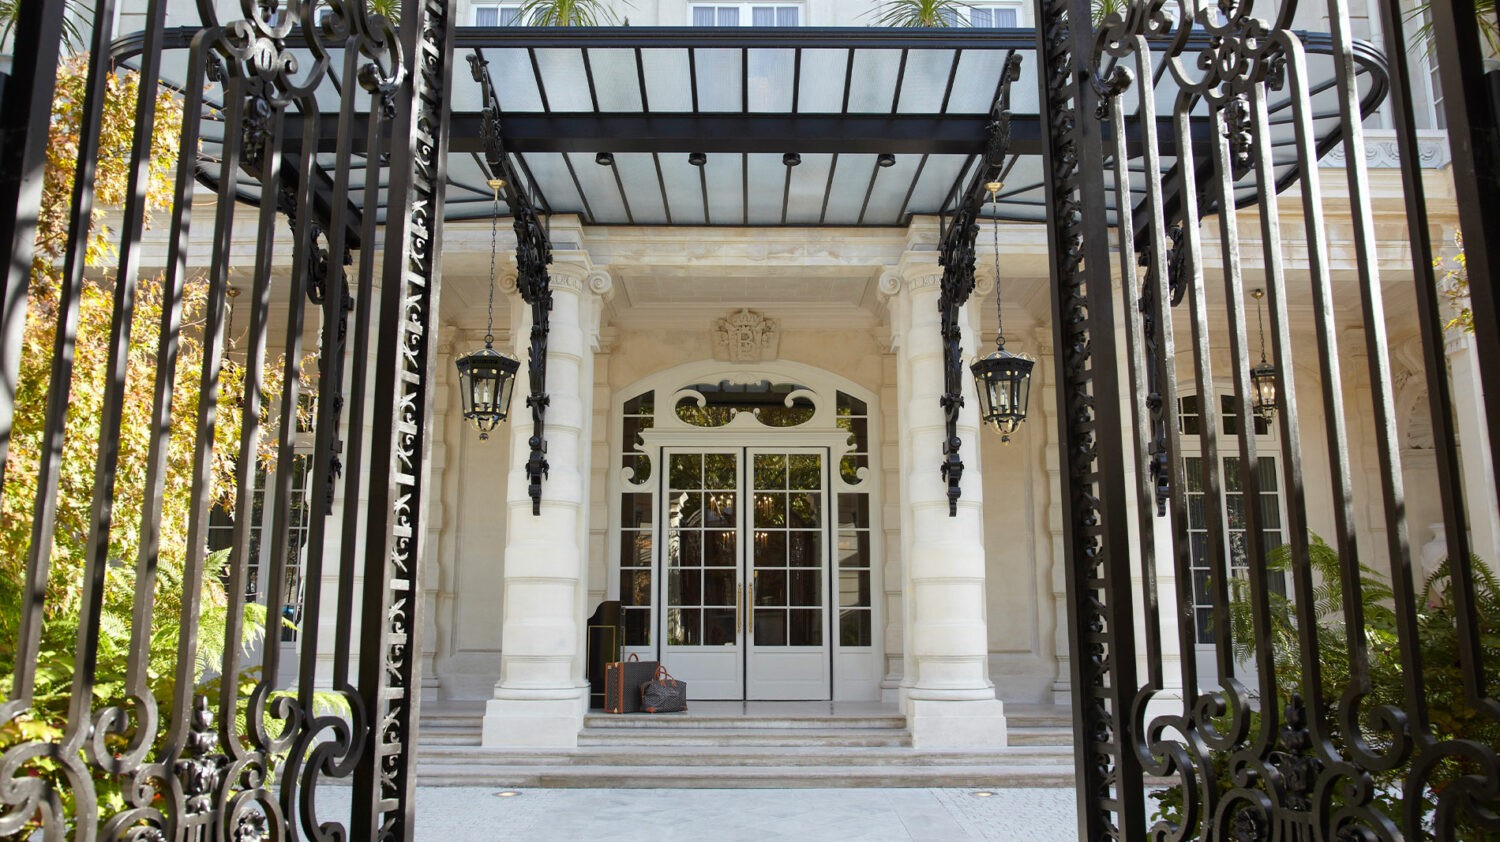 Shangri-La_Hotel-Entrance